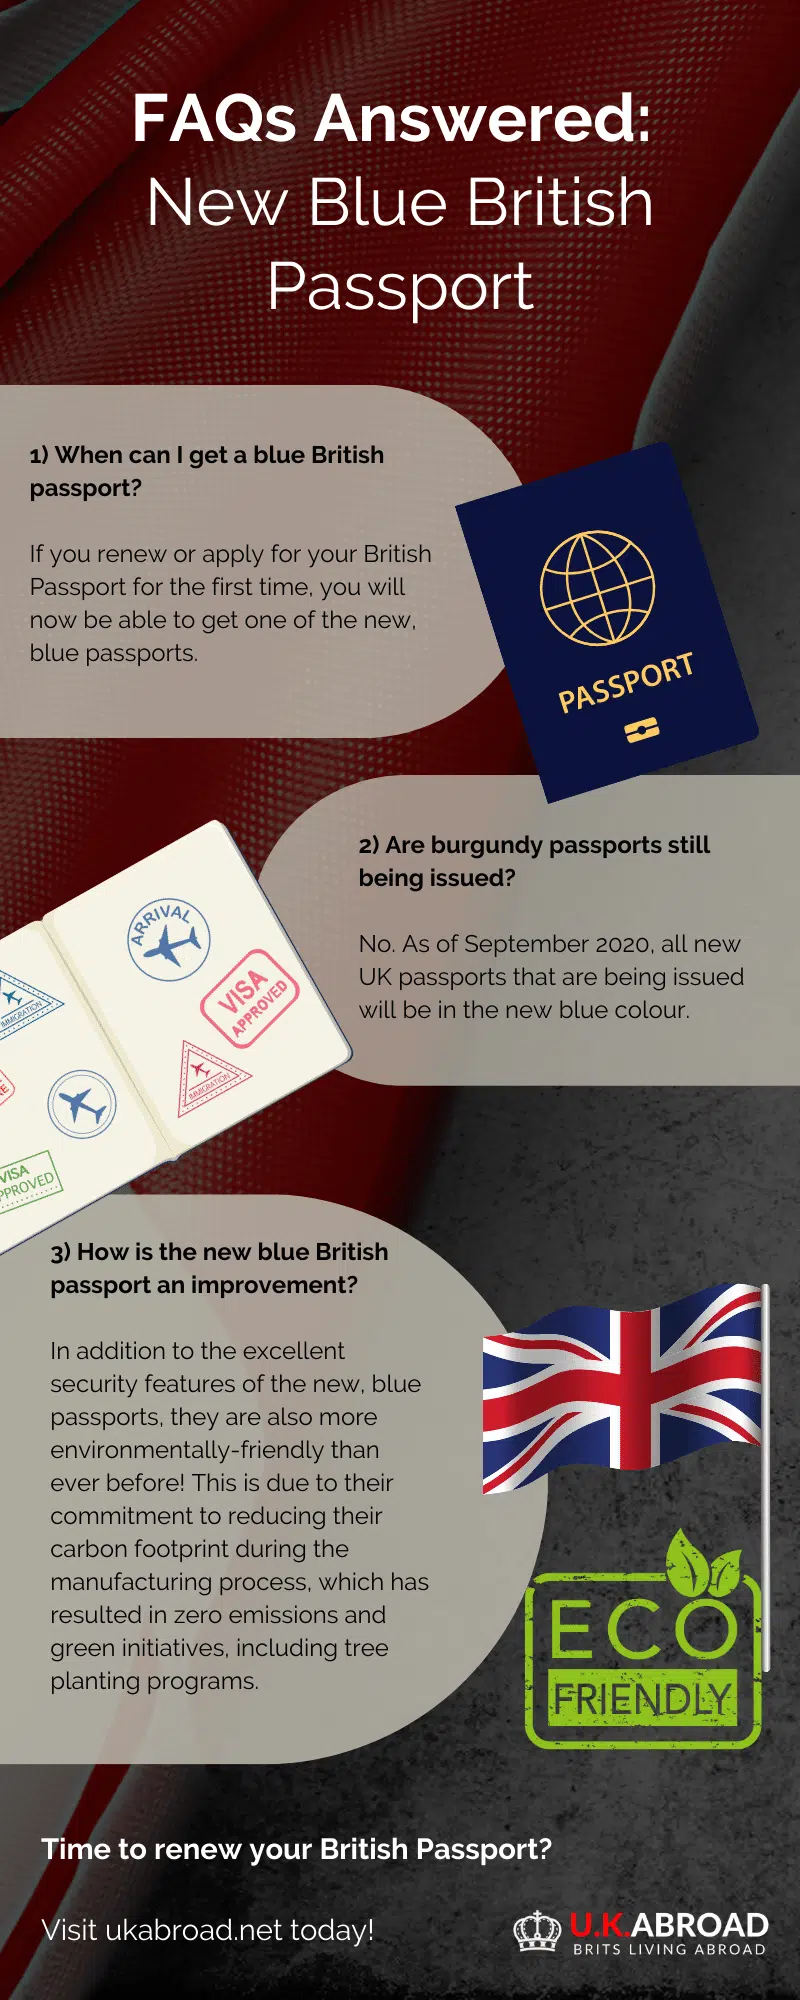 infographic explaining the new blue British Passport